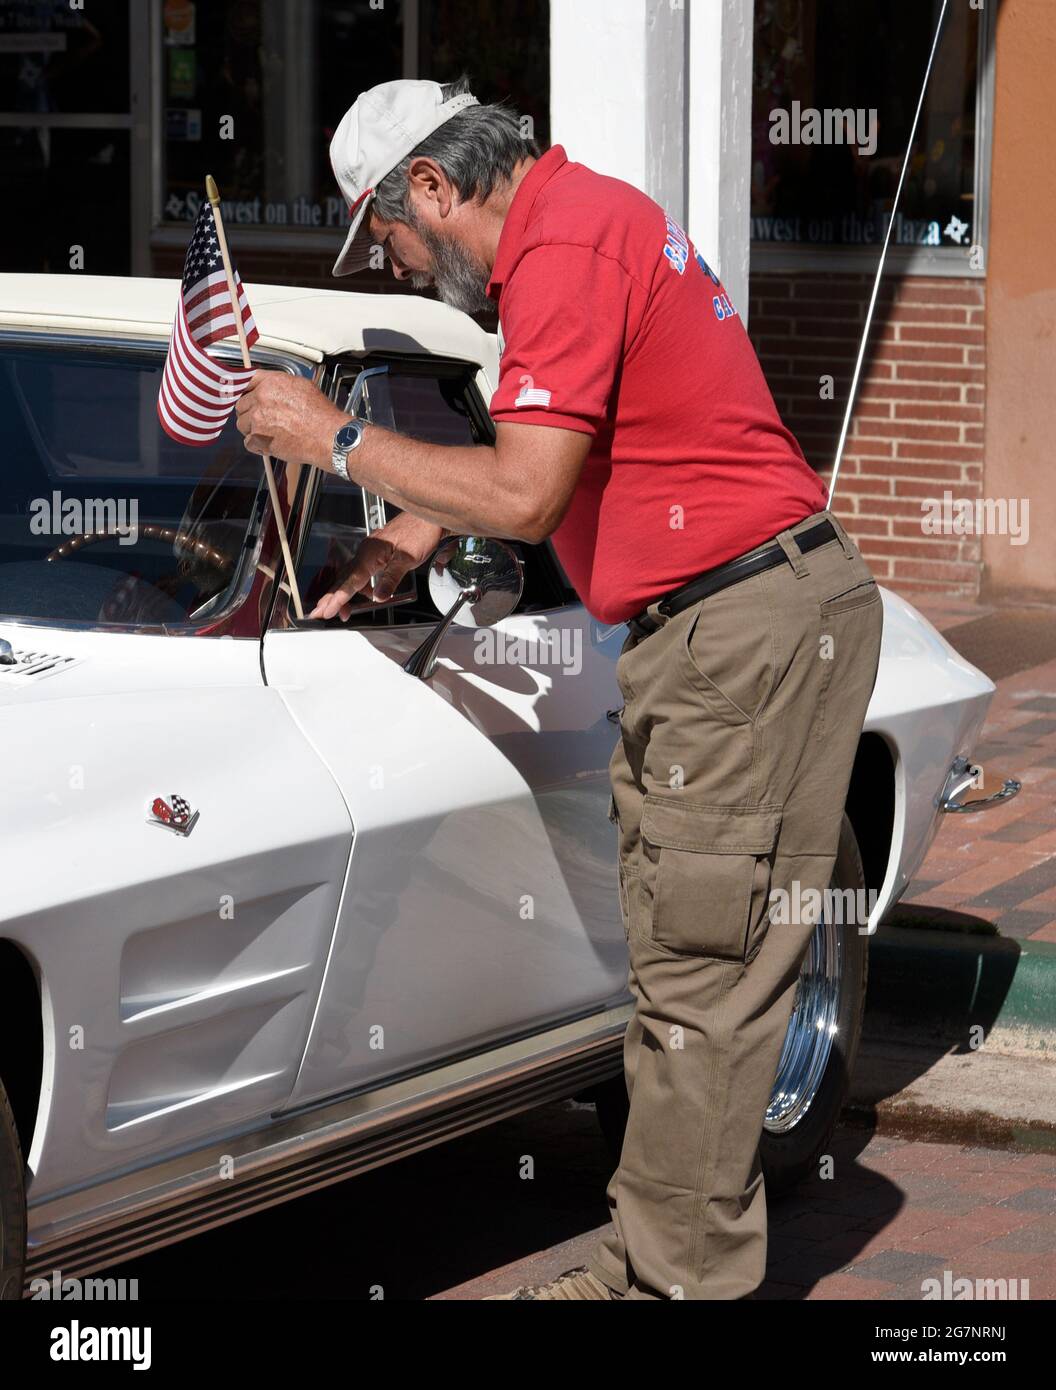 Ein Mann positioniert eine kleine amerikanische Flagge auf seiner klassischen Chevrolet Corvette aus den 1960er Jahren, die auf einer Automobilausstellung am 4. Juli in Santa Fe, New Mexico, ausgestellt wird. Stockfoto